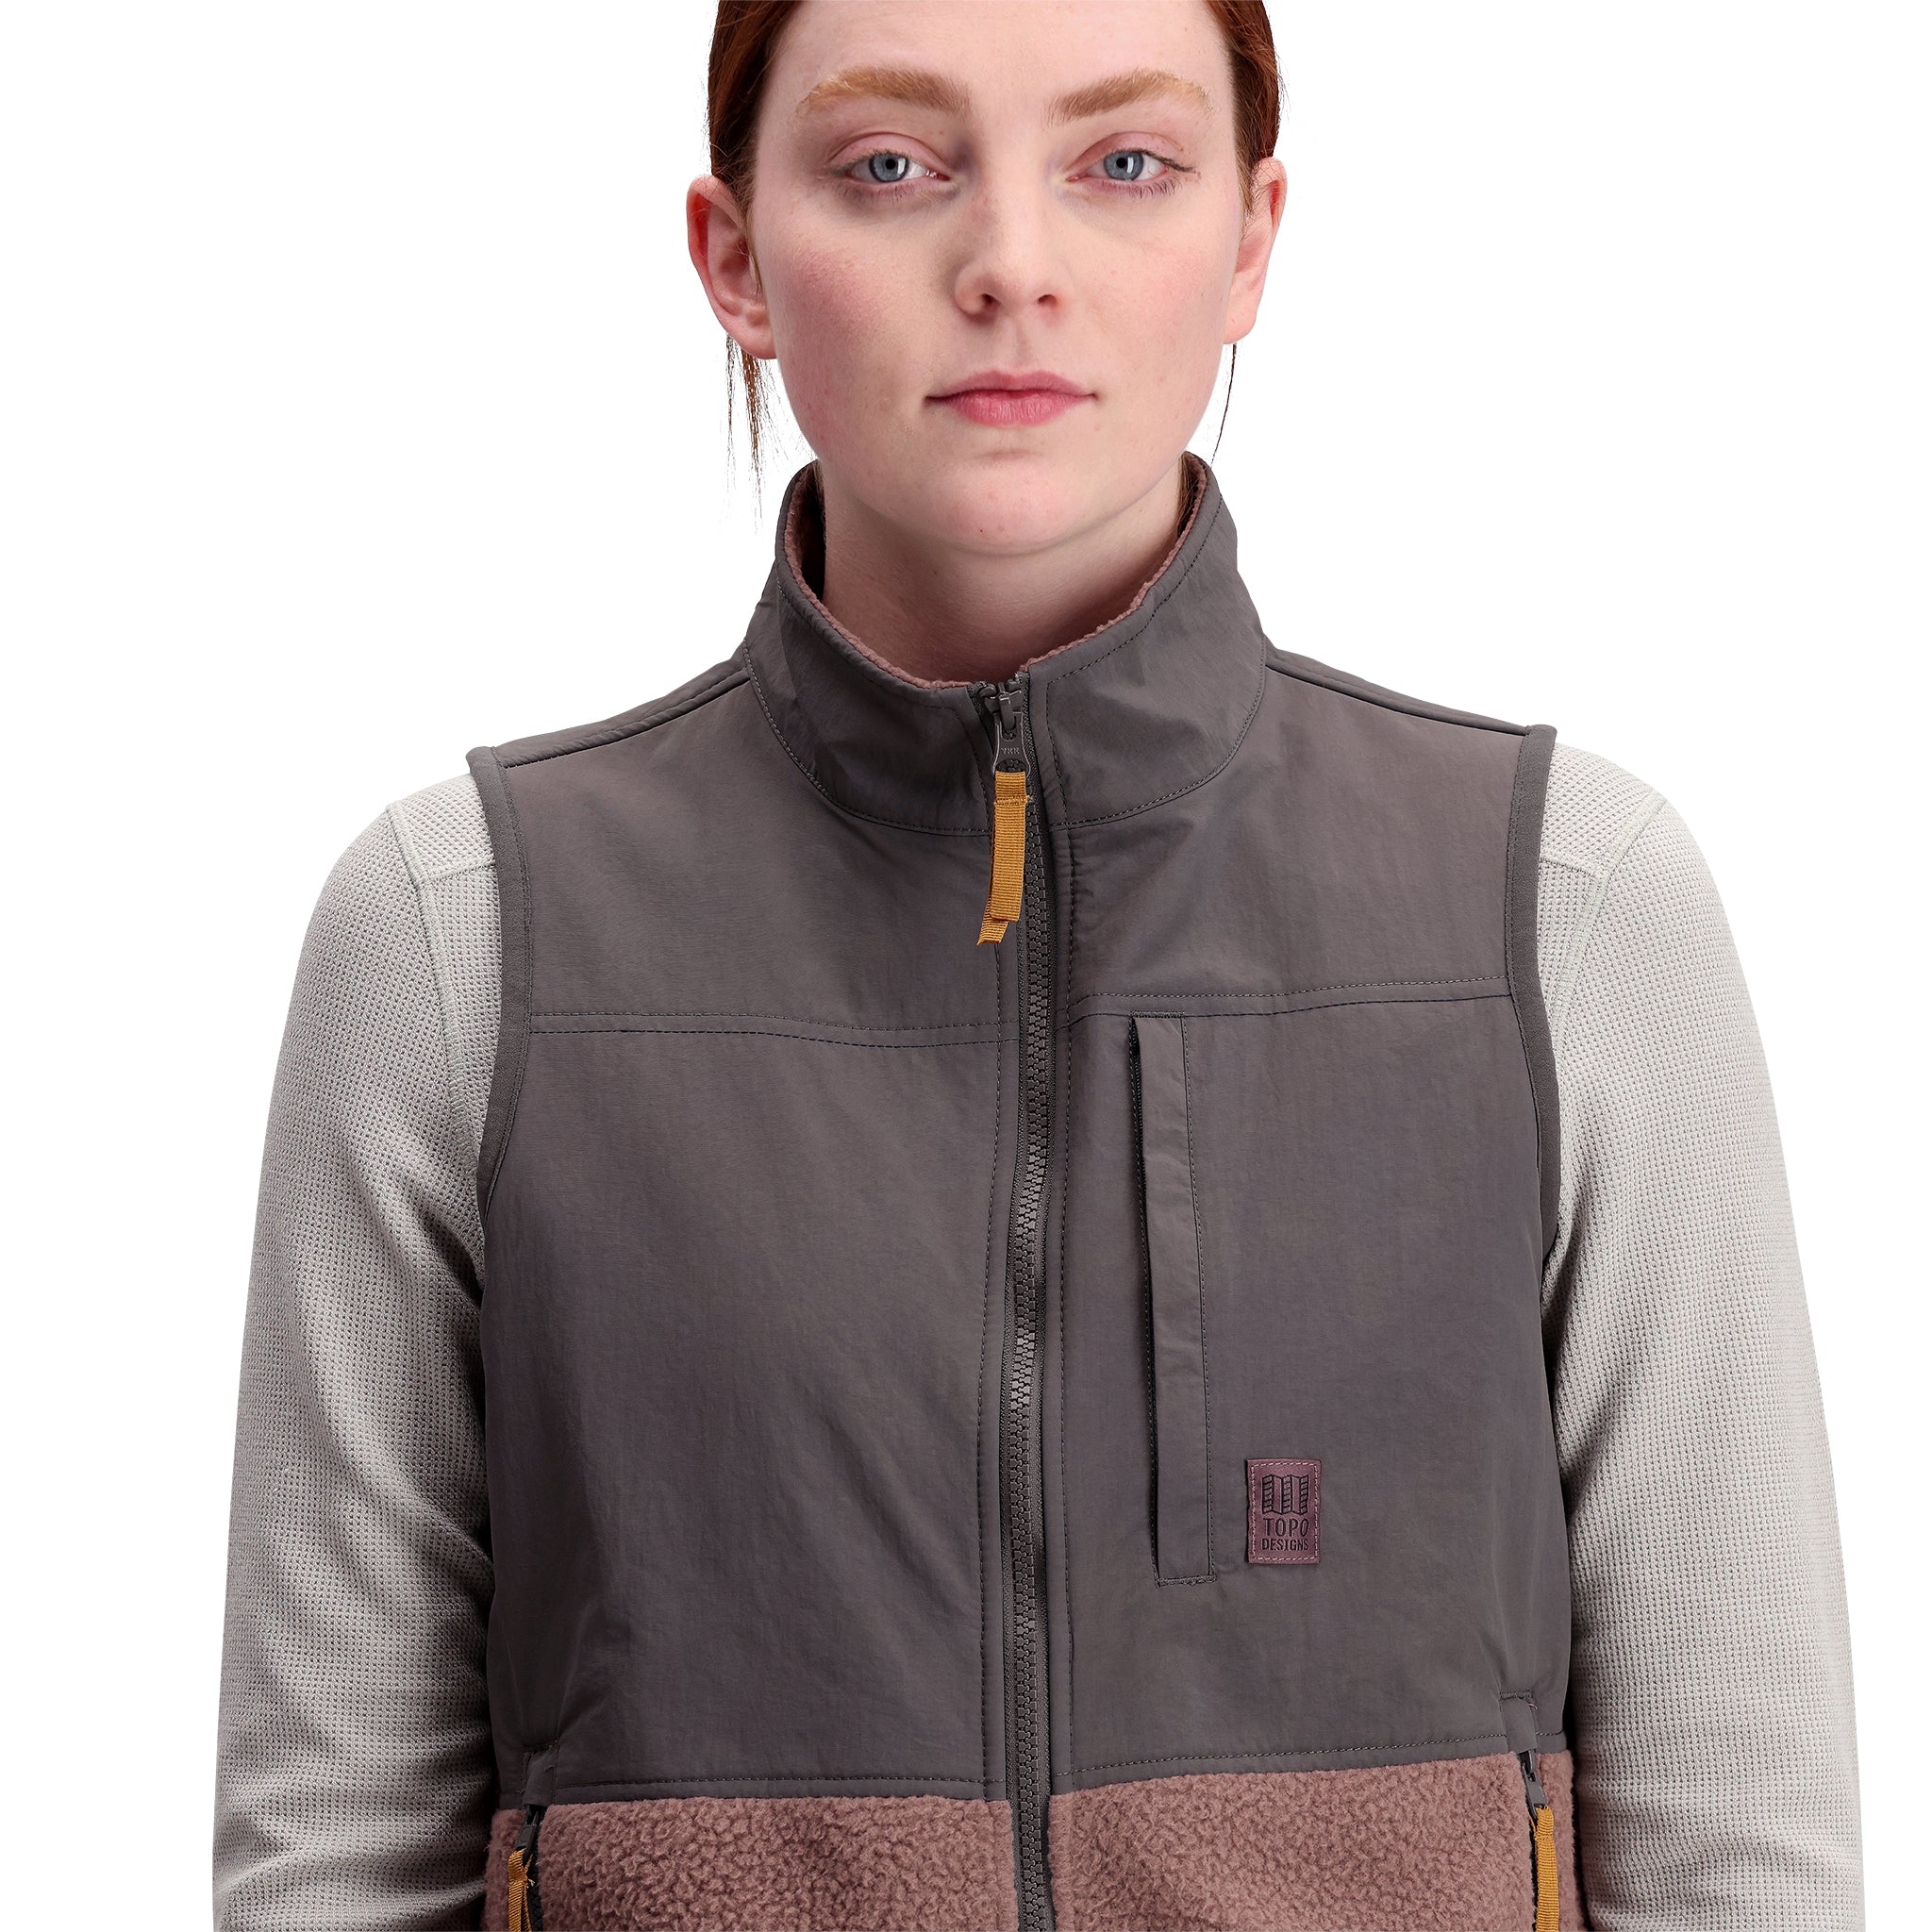 Topo Designs Canada, Womens/Outerwear/Fleece